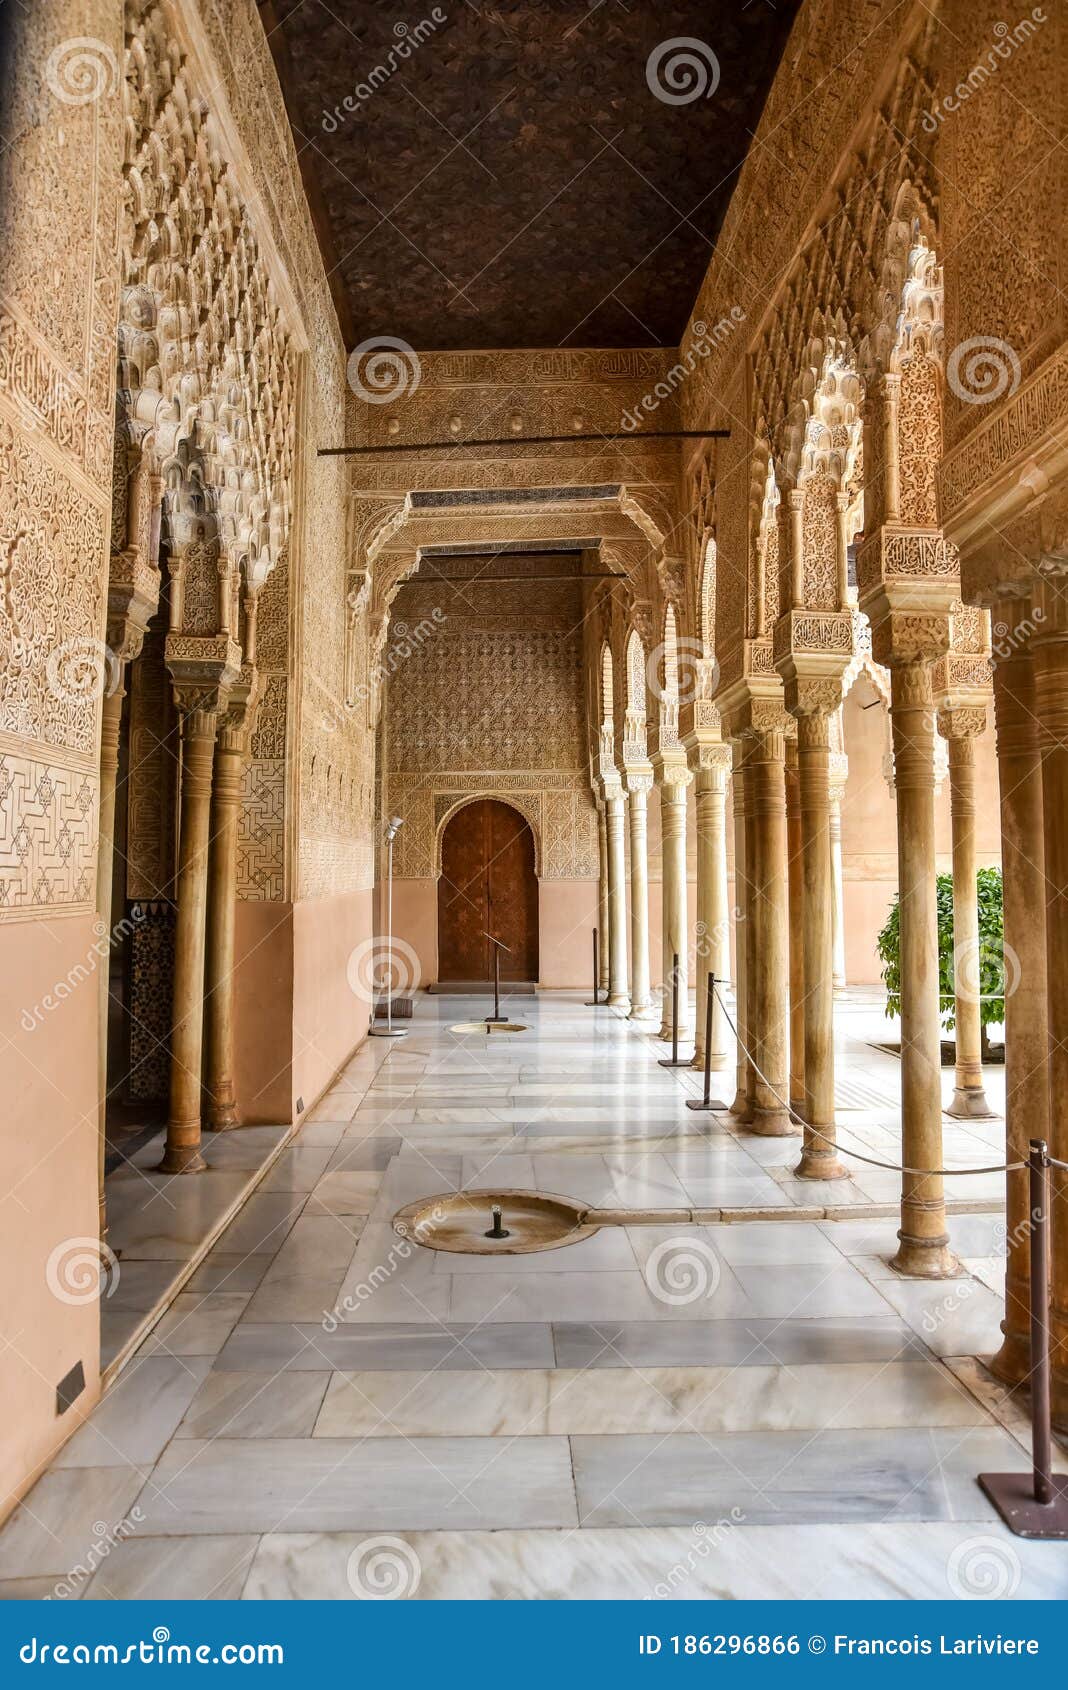 suite of columns inside the palacio de los leones, alhambra spain